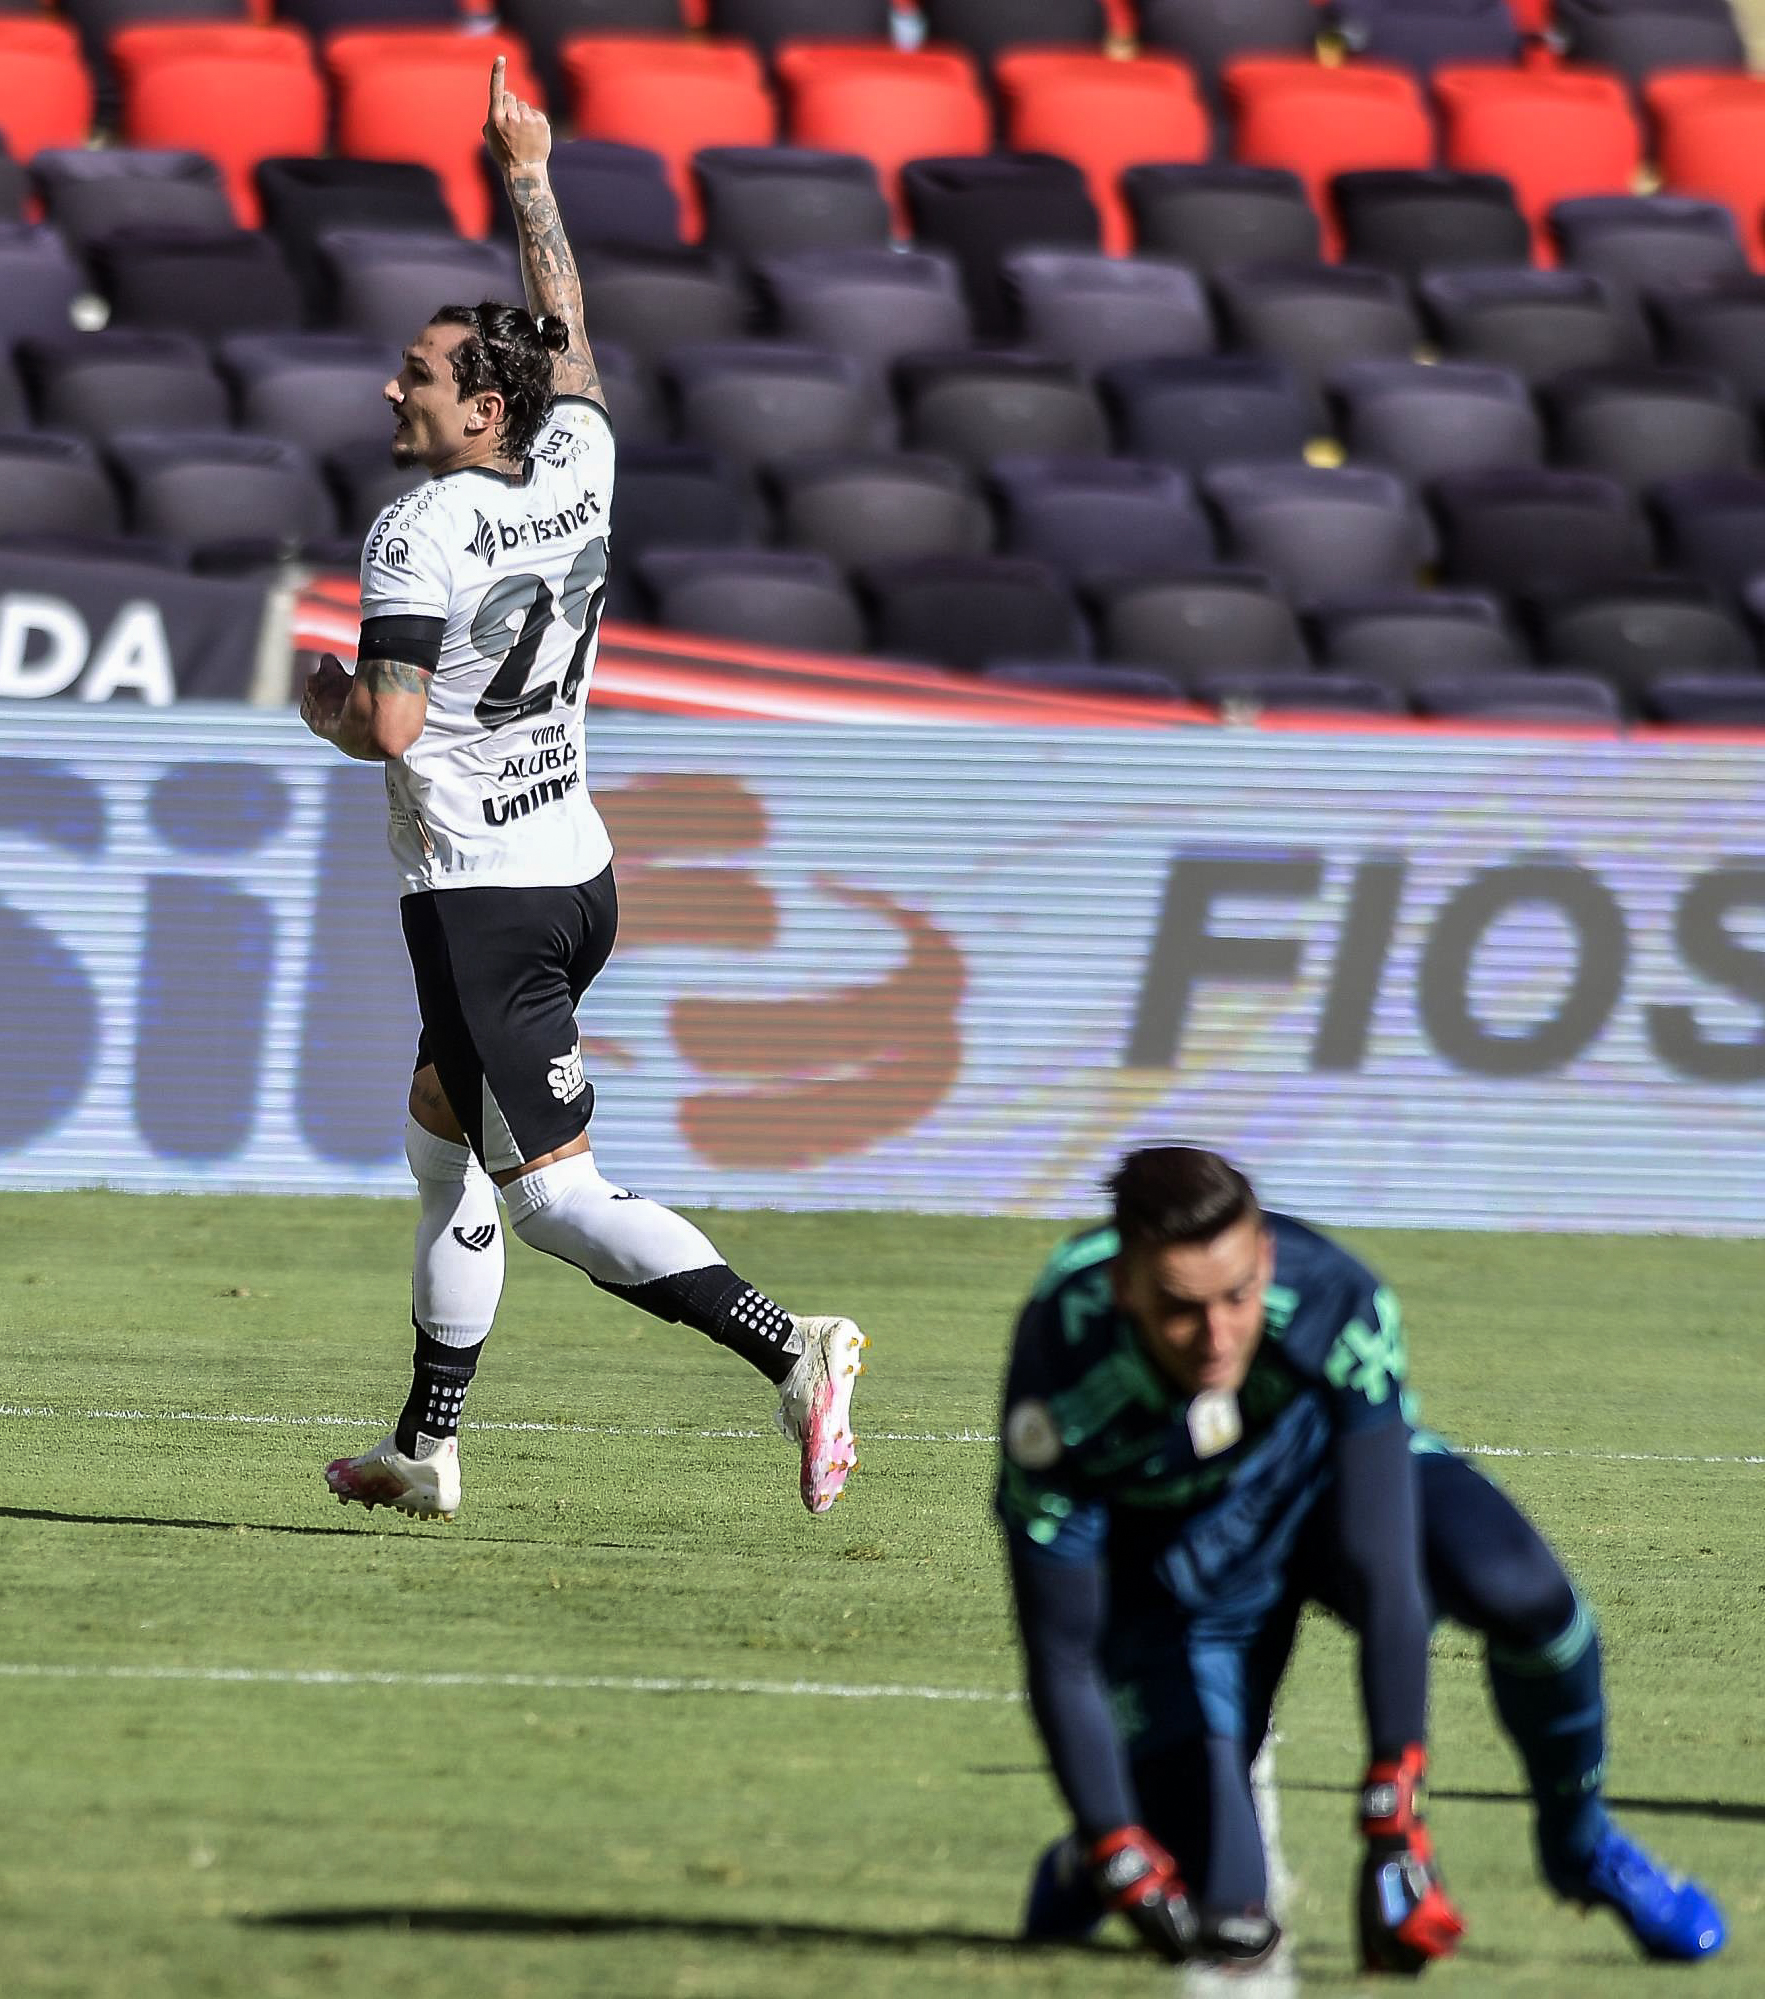 ￼VINA abriu o placar para o Ceará 
na vitória de 2 a 0 sobre o Flamengo (Foto: DHAVID NORMANDO/AE)